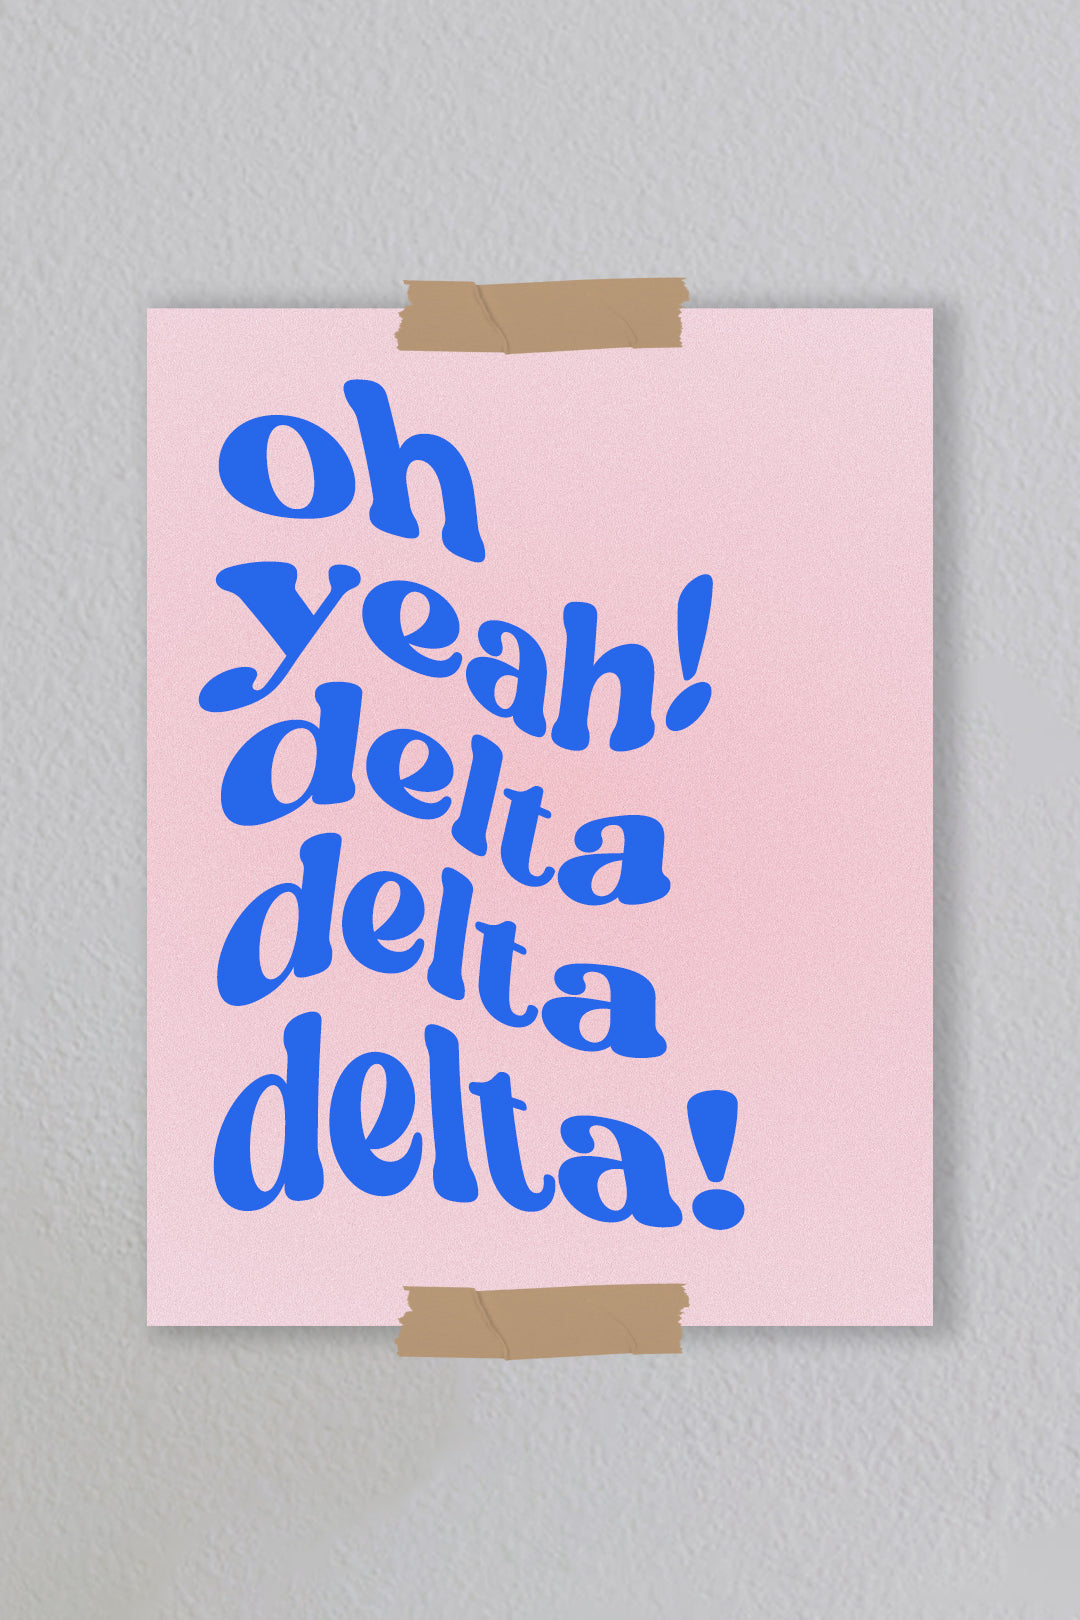 Delta Delta Delta - Art Print #11 (8.5x11)